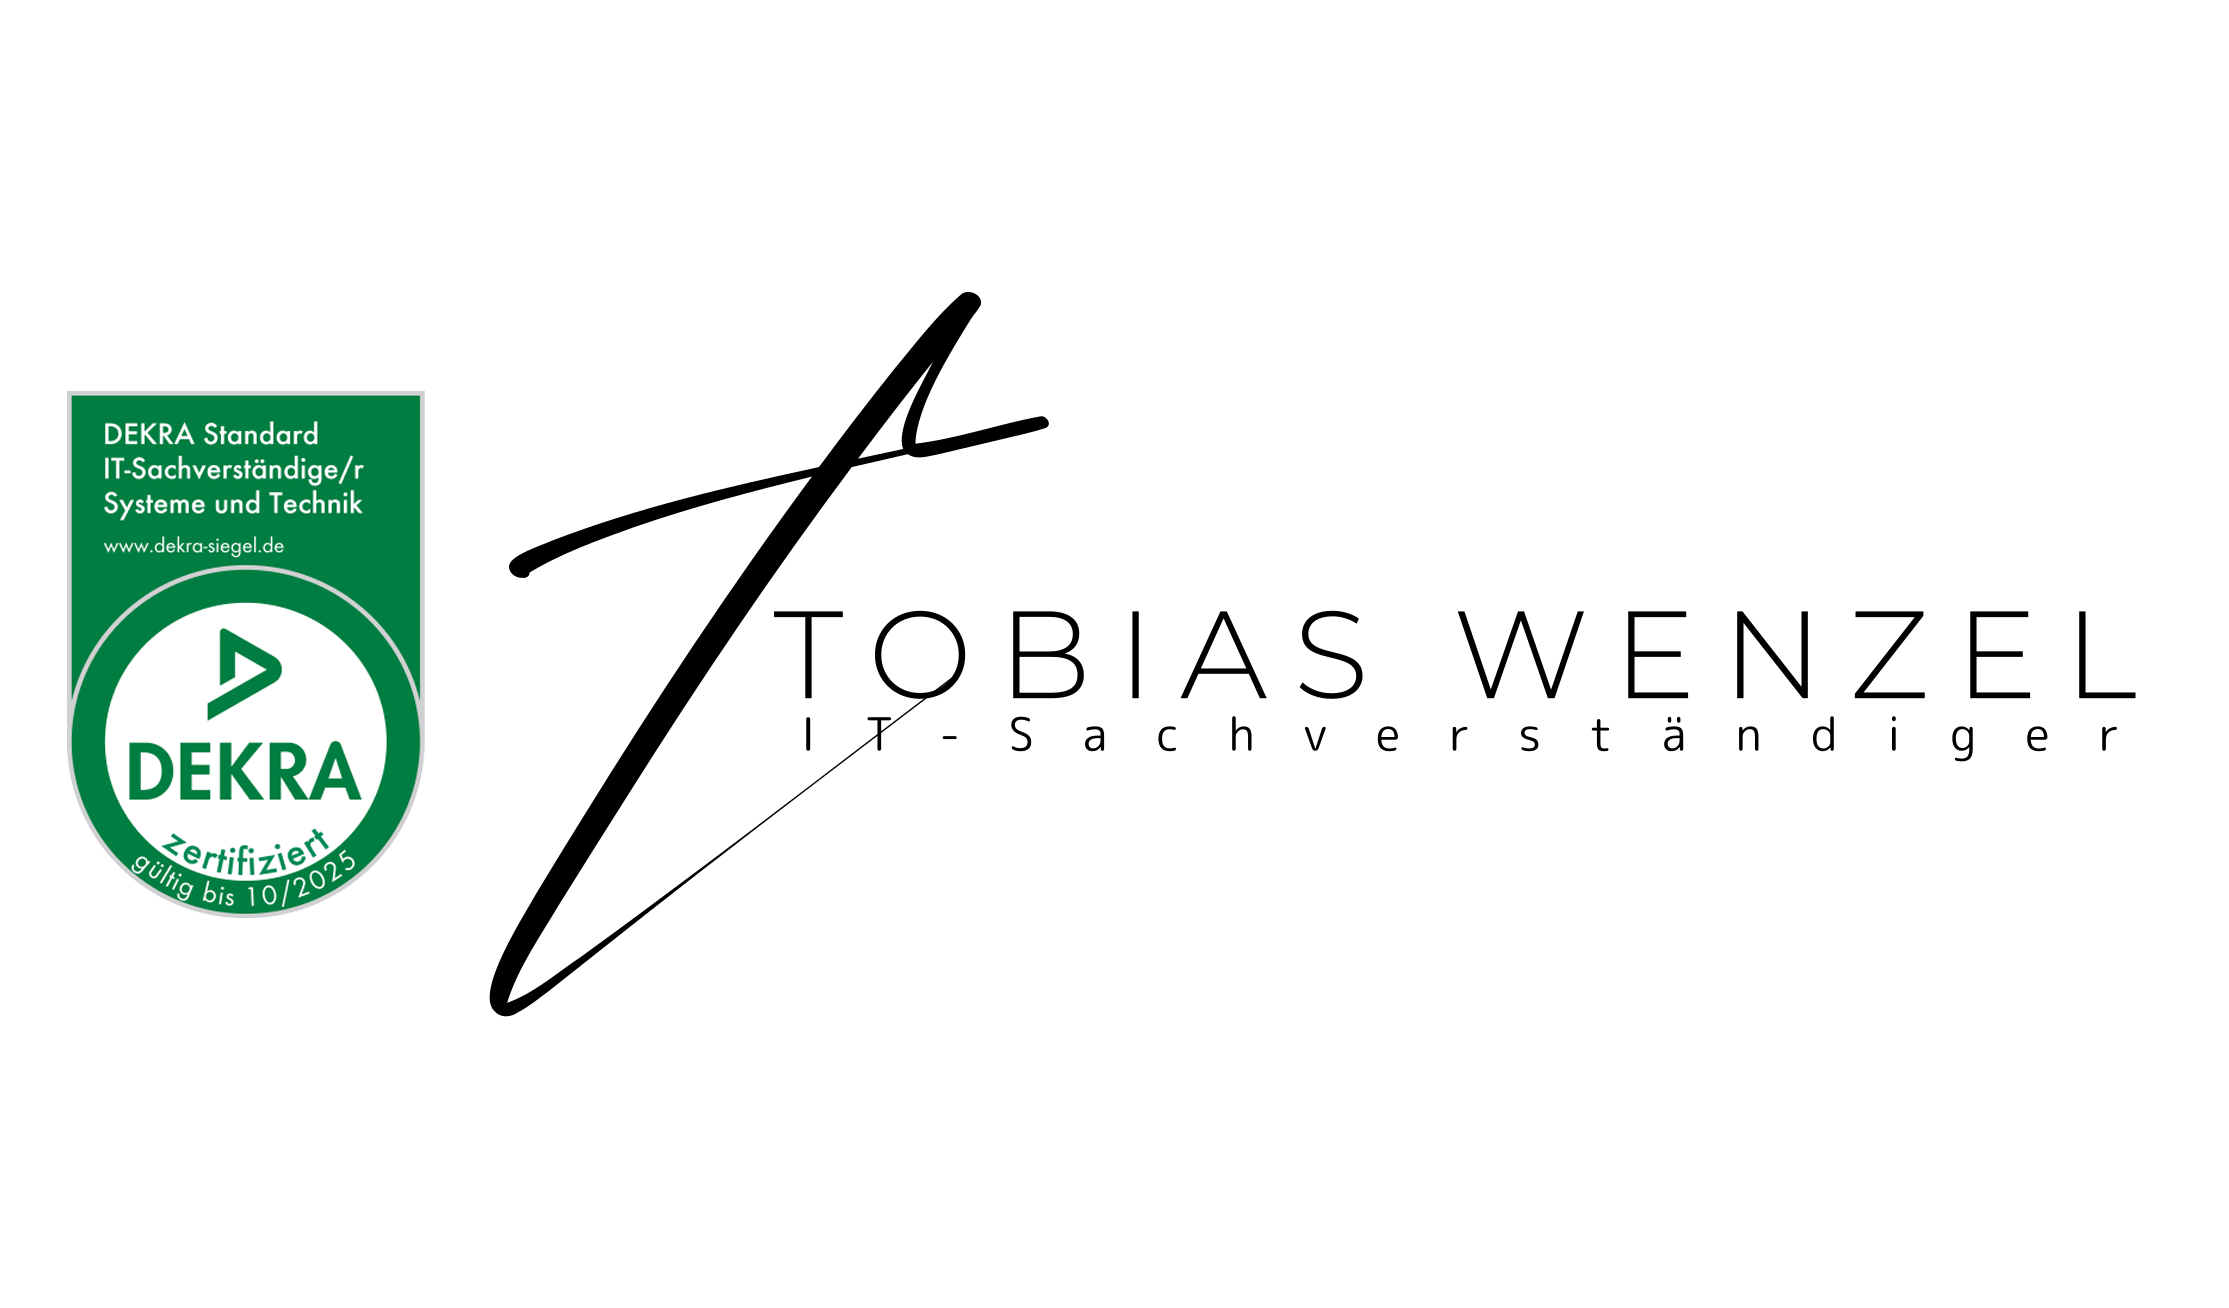 TOBIAS WENZEL | IT-Sachverständiger